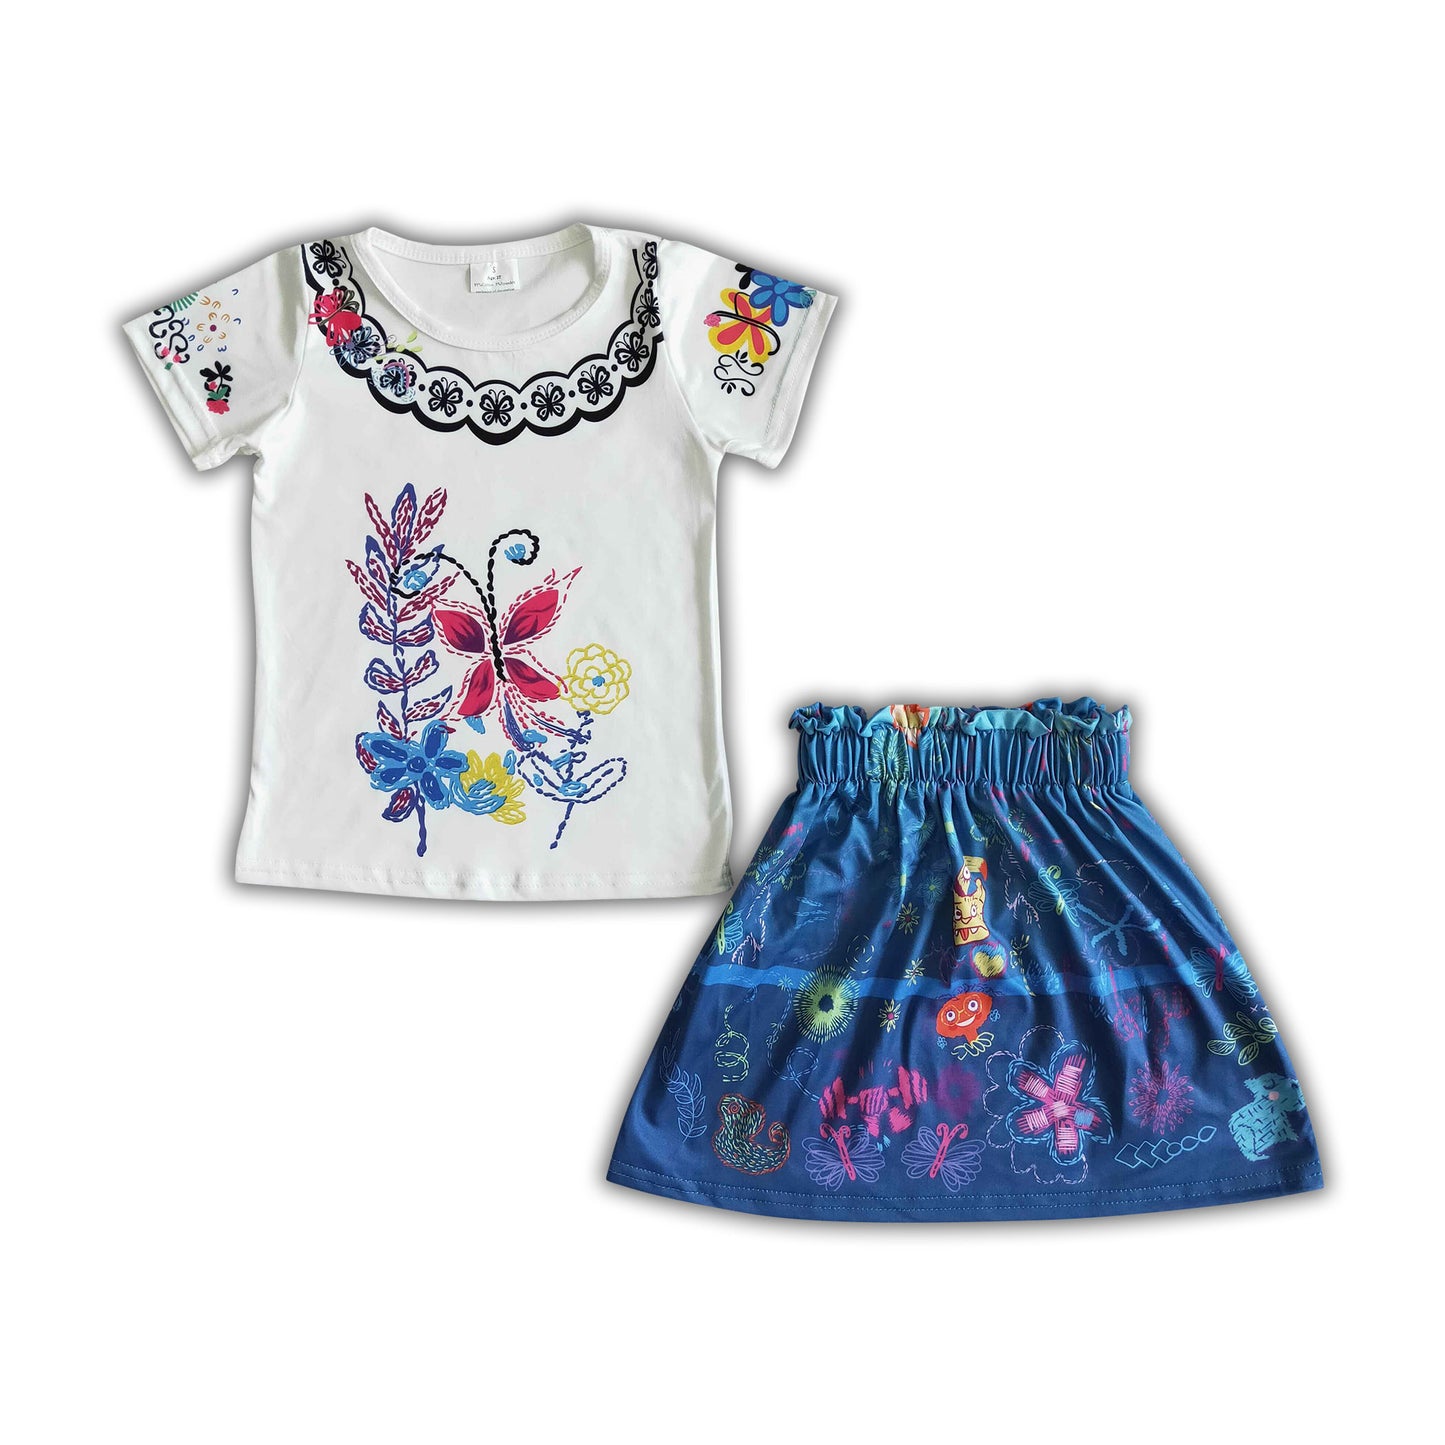 Cute magic print short sleeve shirt skirt baby girls summer outfits